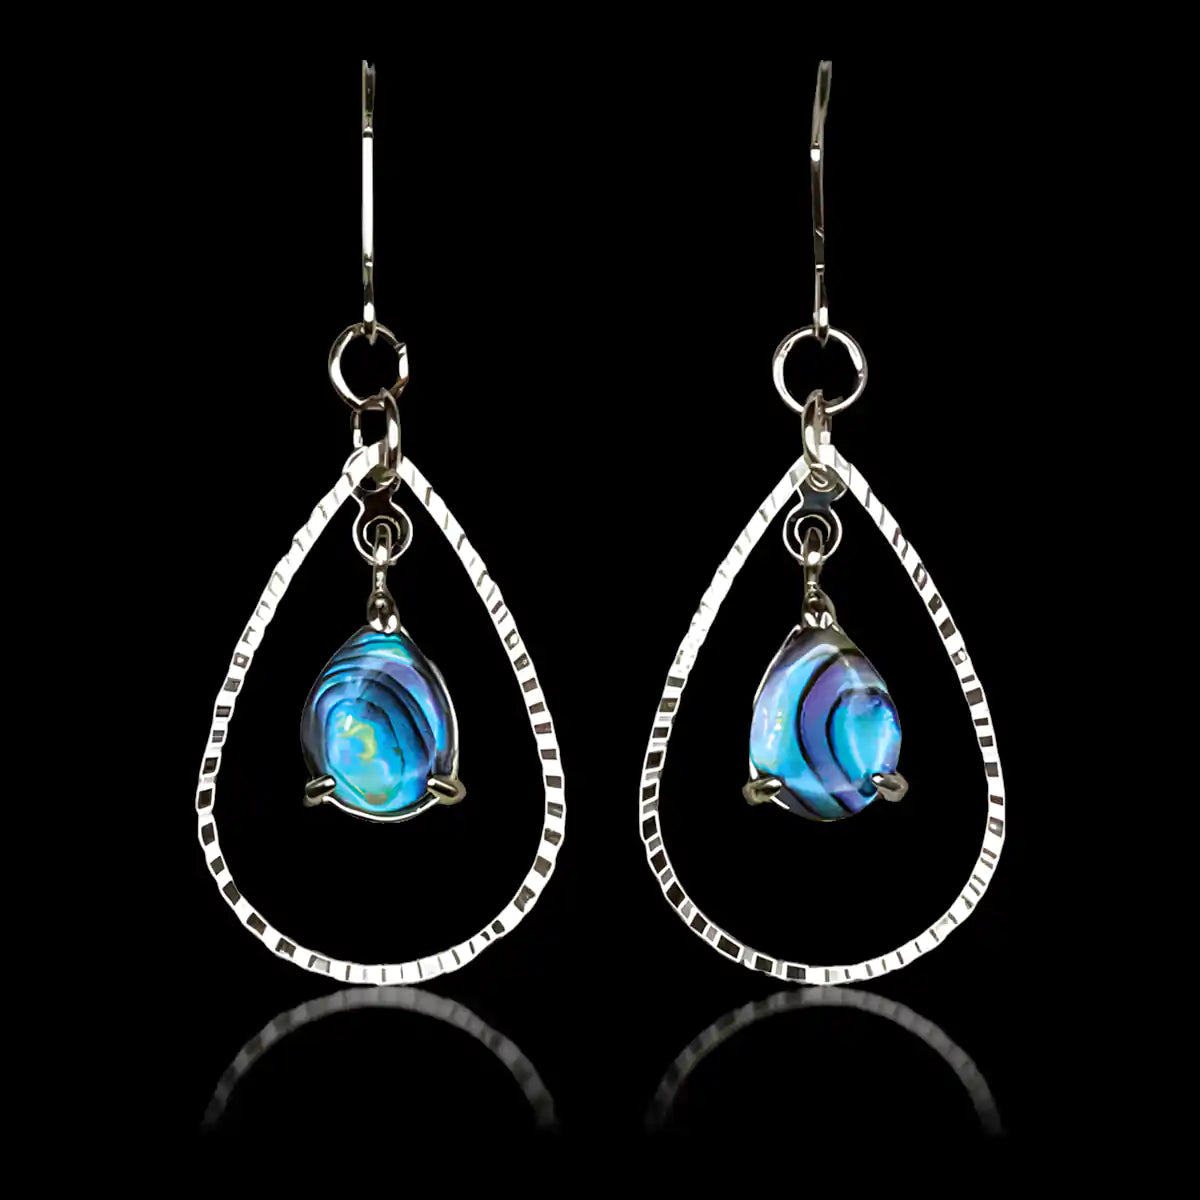 Glacier pearle vibrant earrings